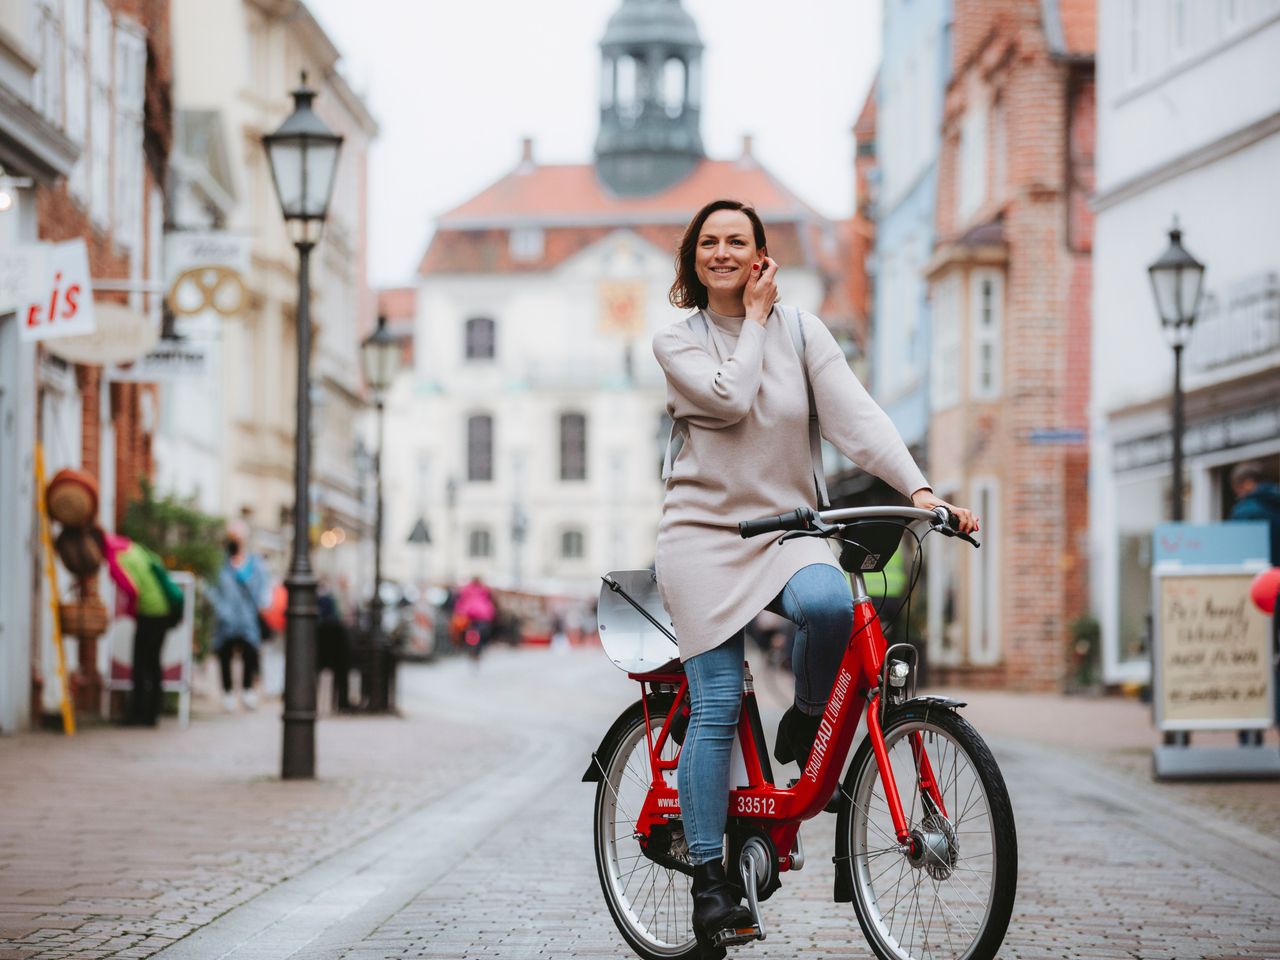 Frau auf einem Fahrrad in einer Innenstadt